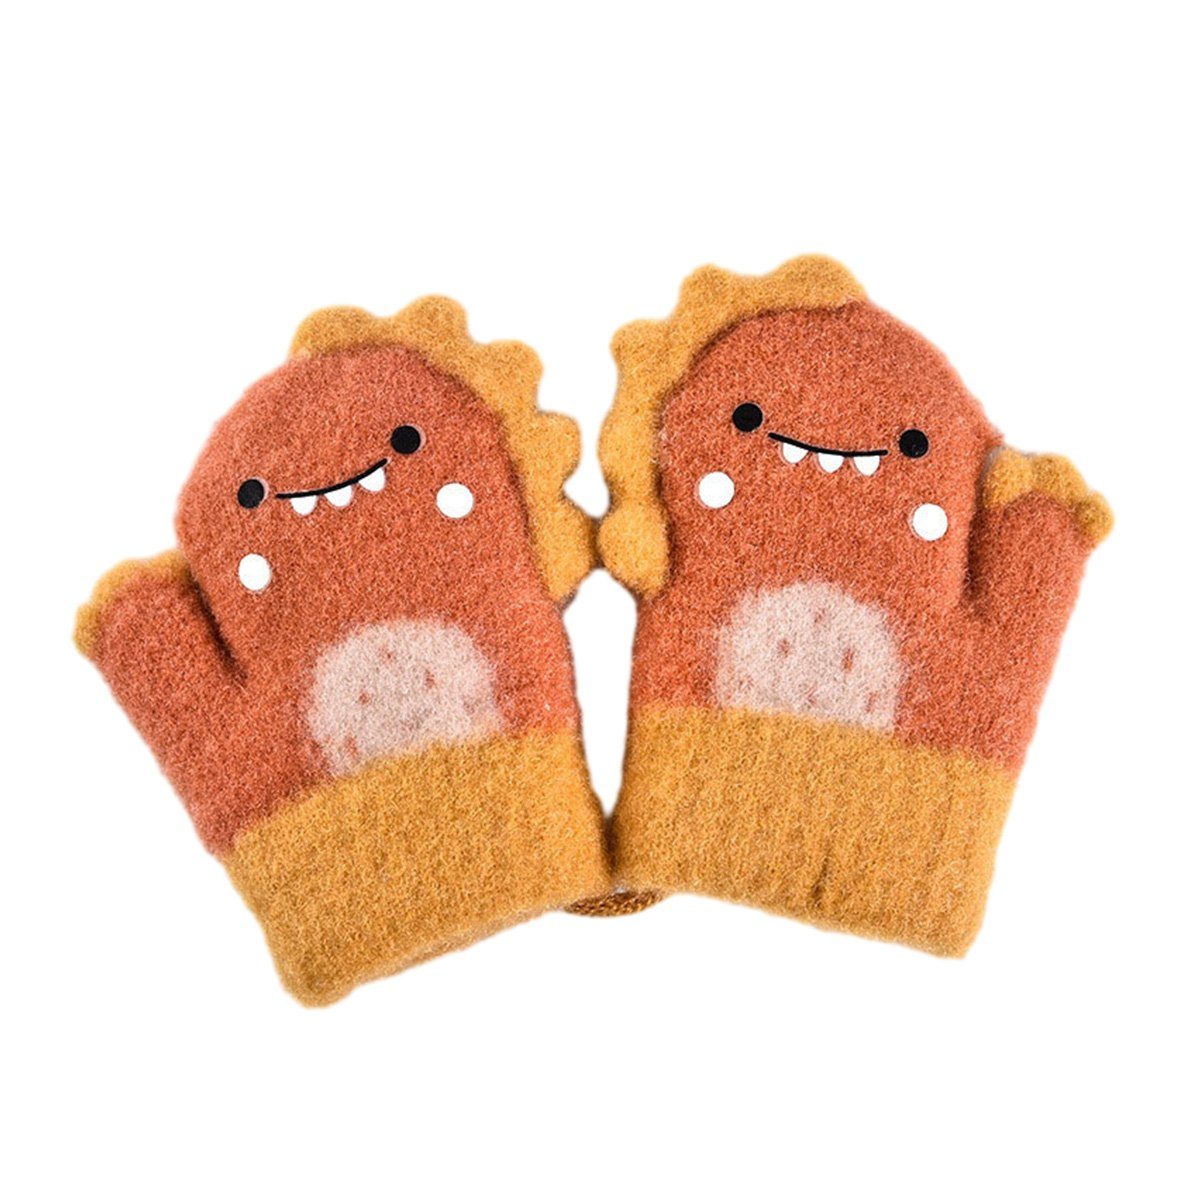 ZmdecQna Strickhandschuhe Herbst und Winter Baby Warme Handschuhe,1-3 Jahre alt Orange